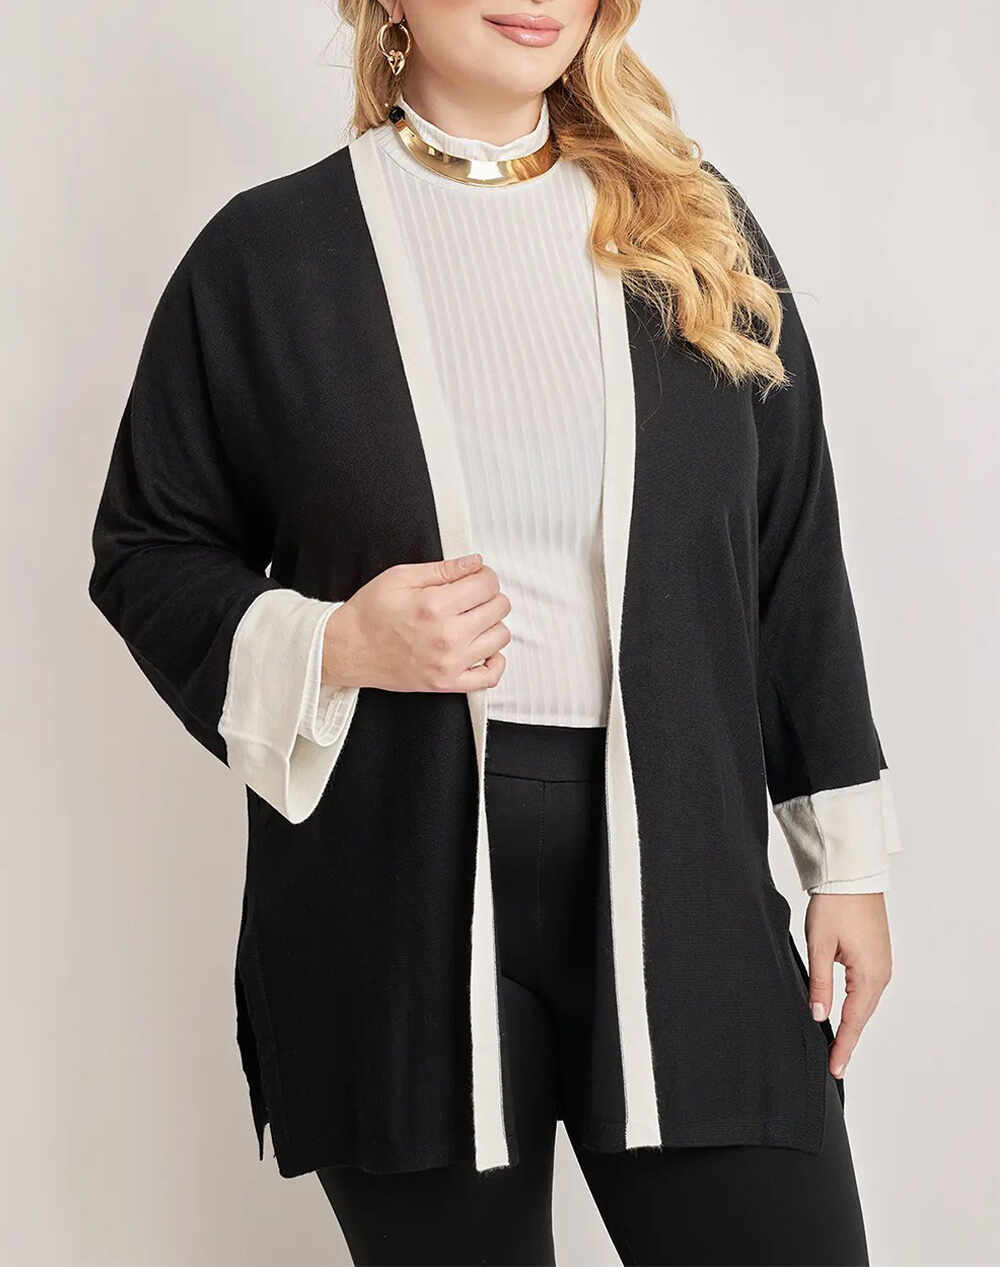 PARABITA Jacheta tricotata cu model in doua culori